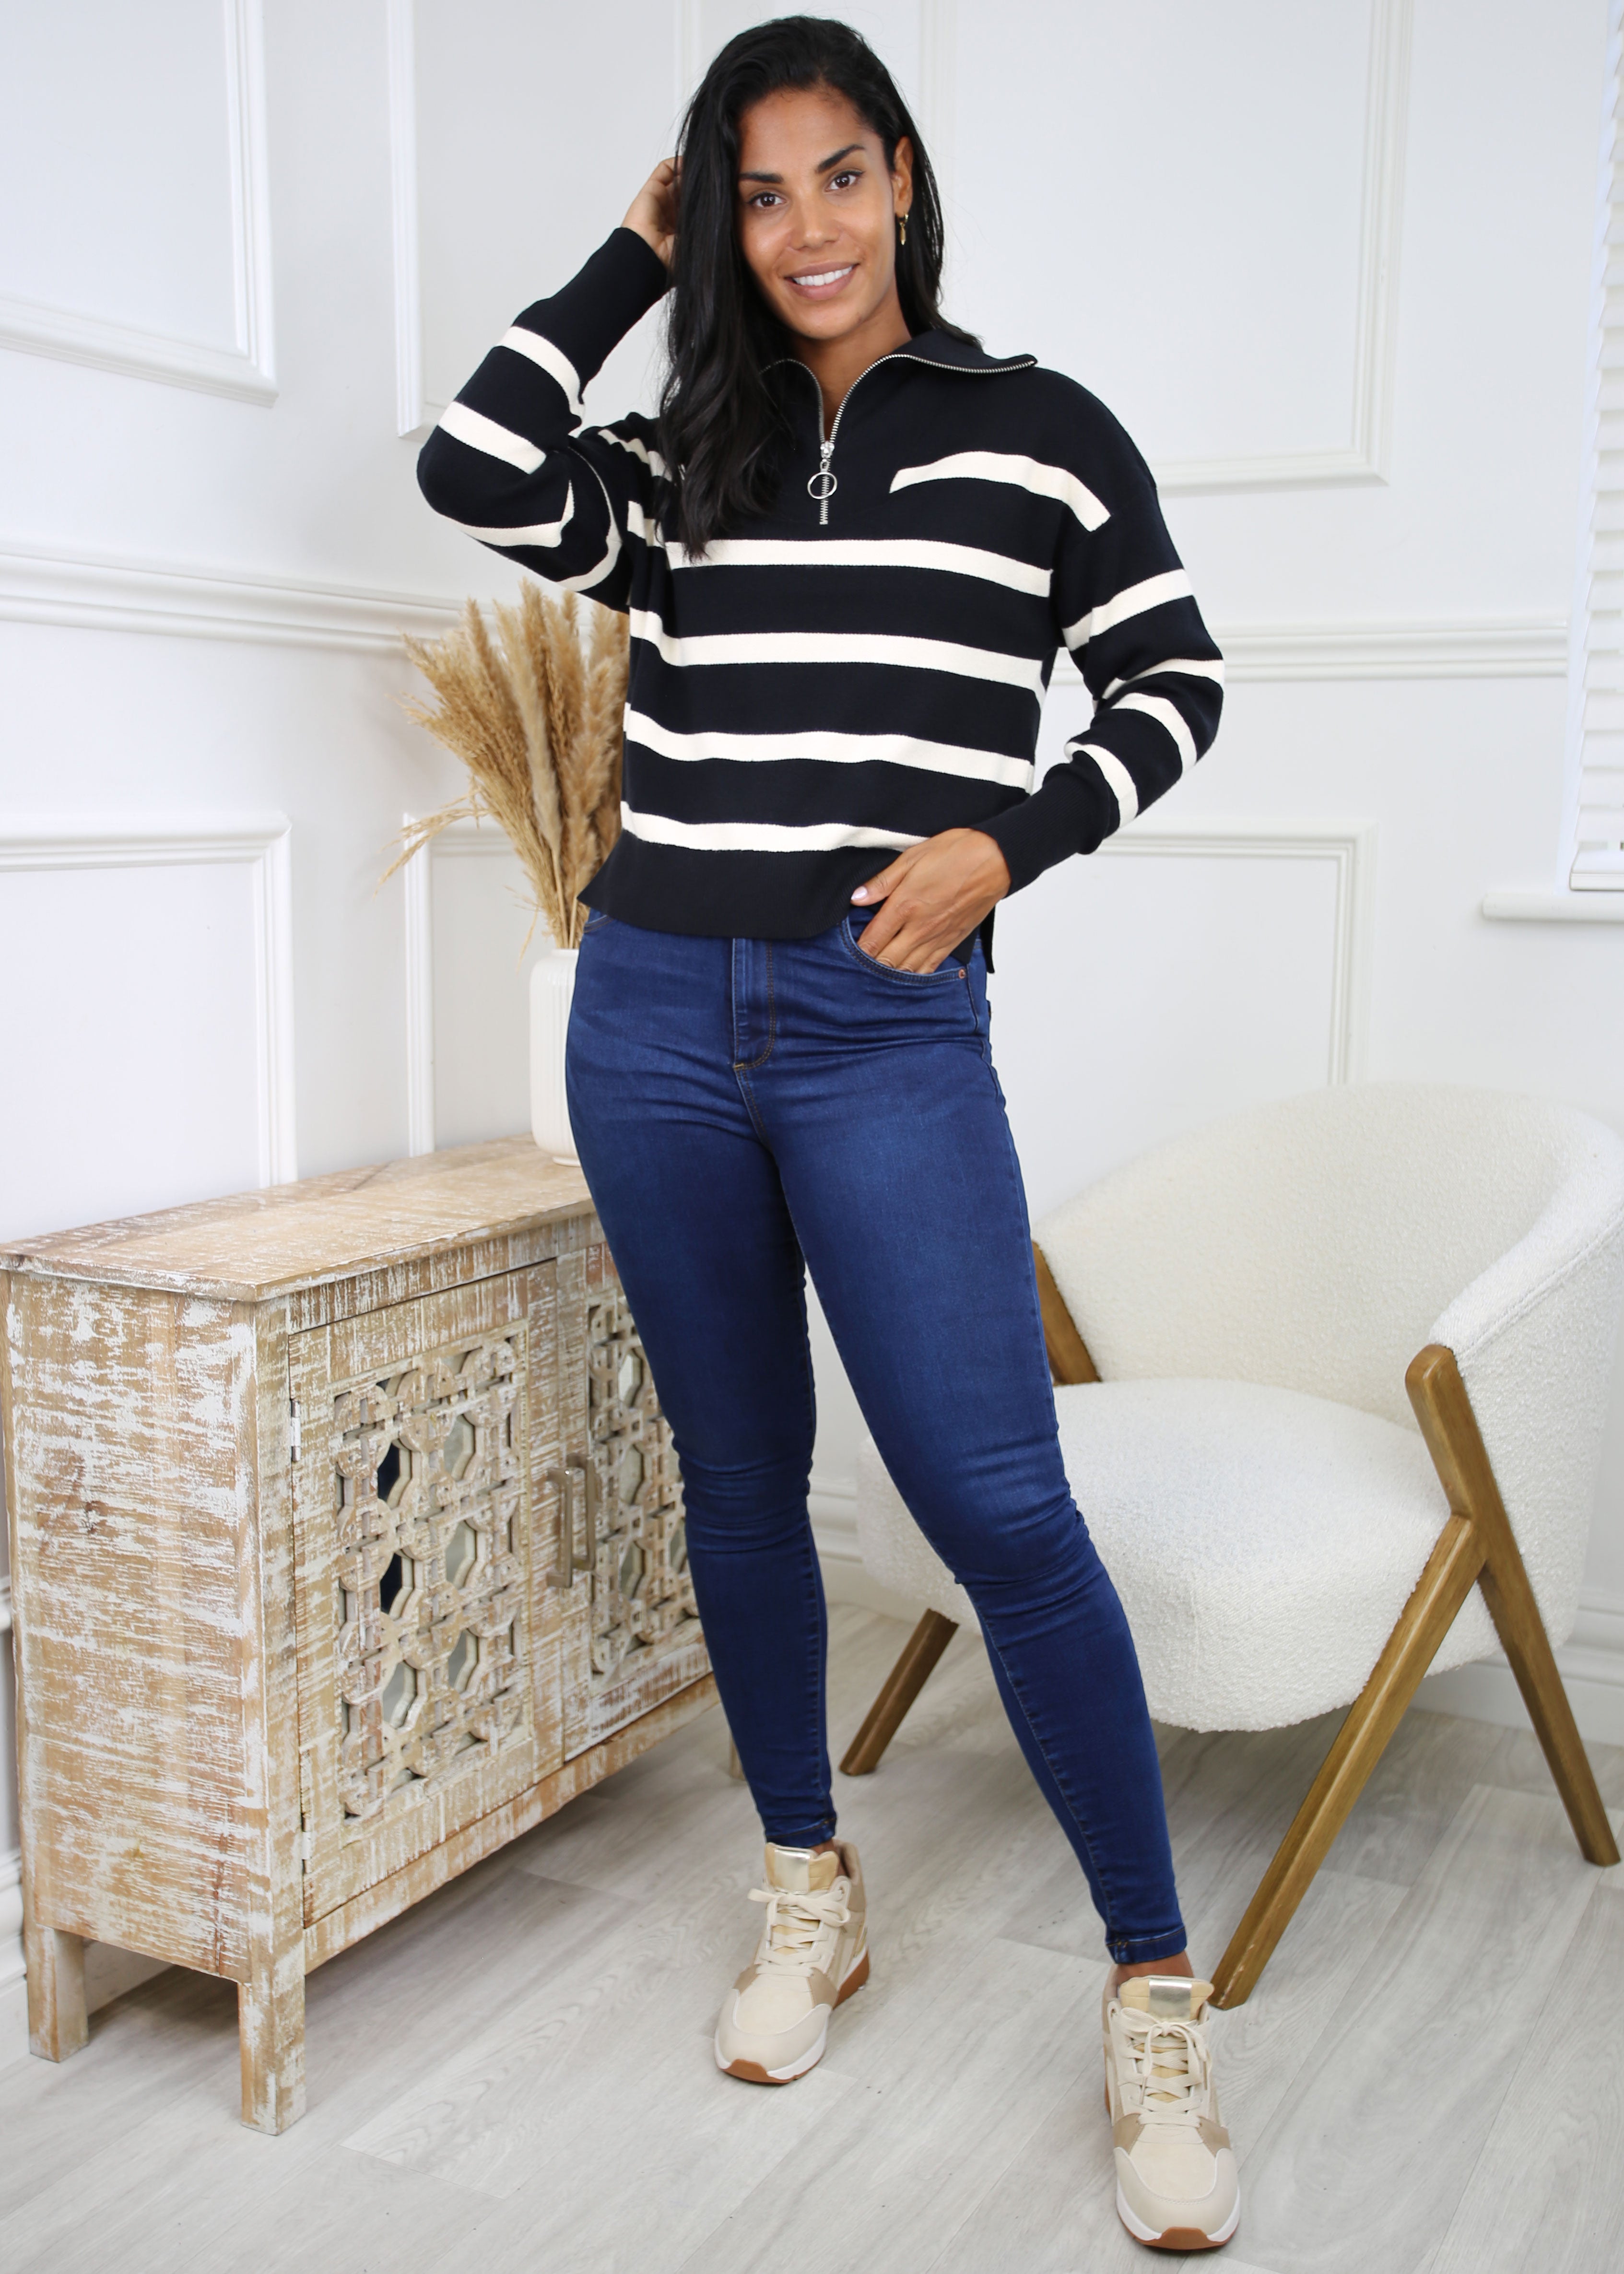 Saba Black White Stripe Pullover